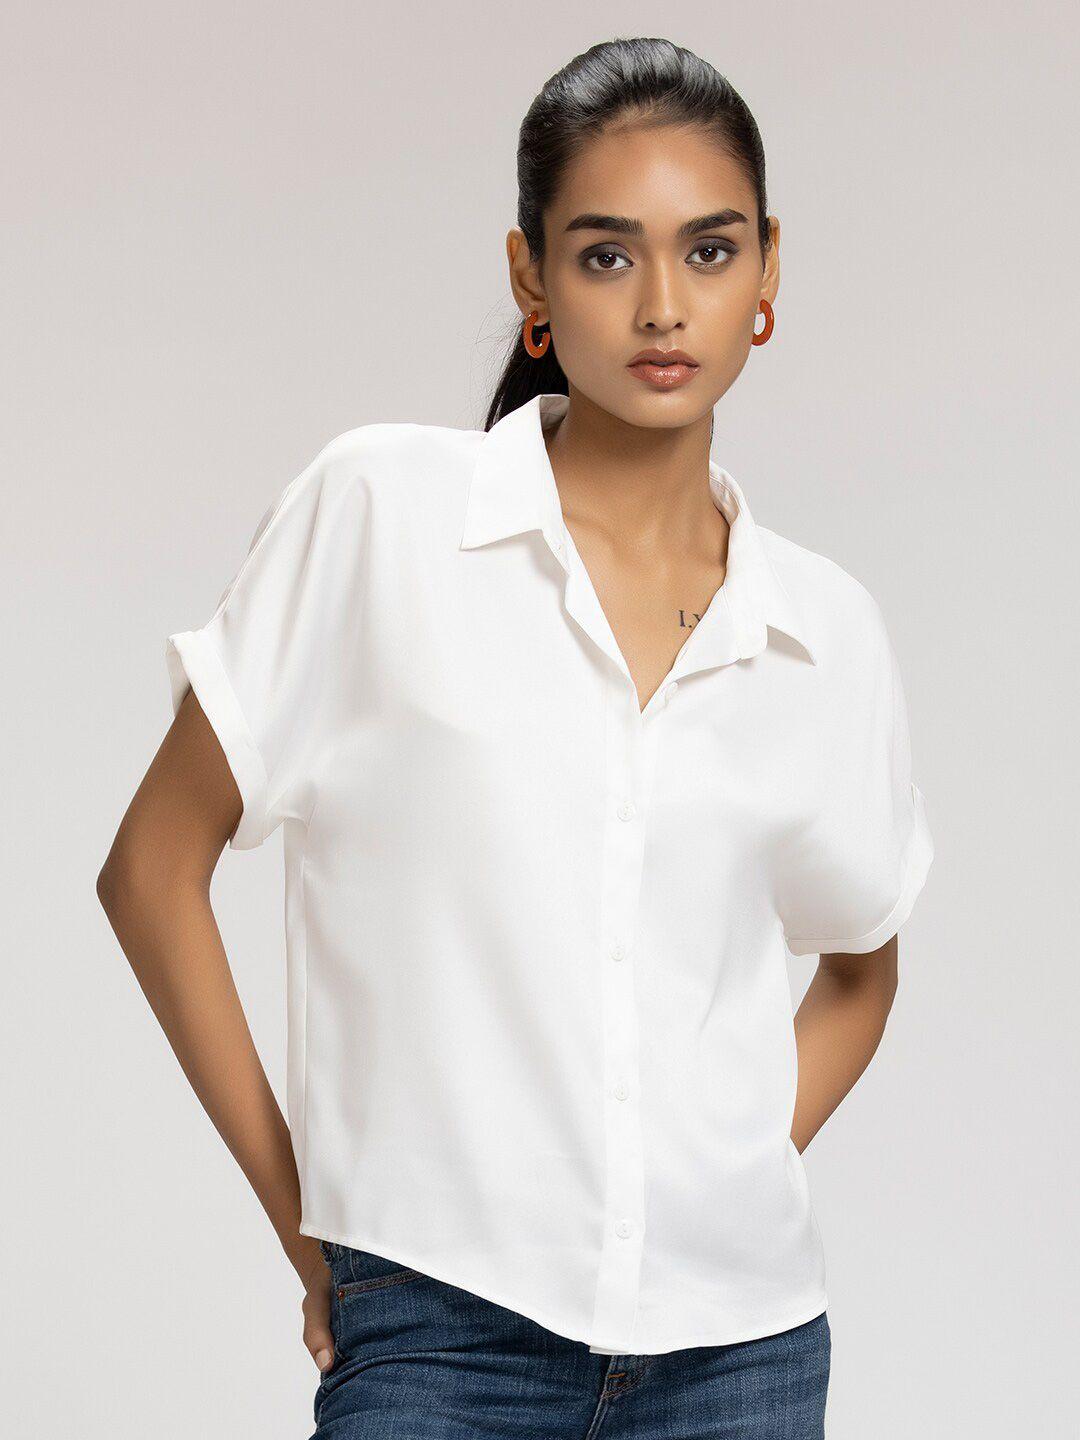 shaye-women-white-comfort-casual-shirt